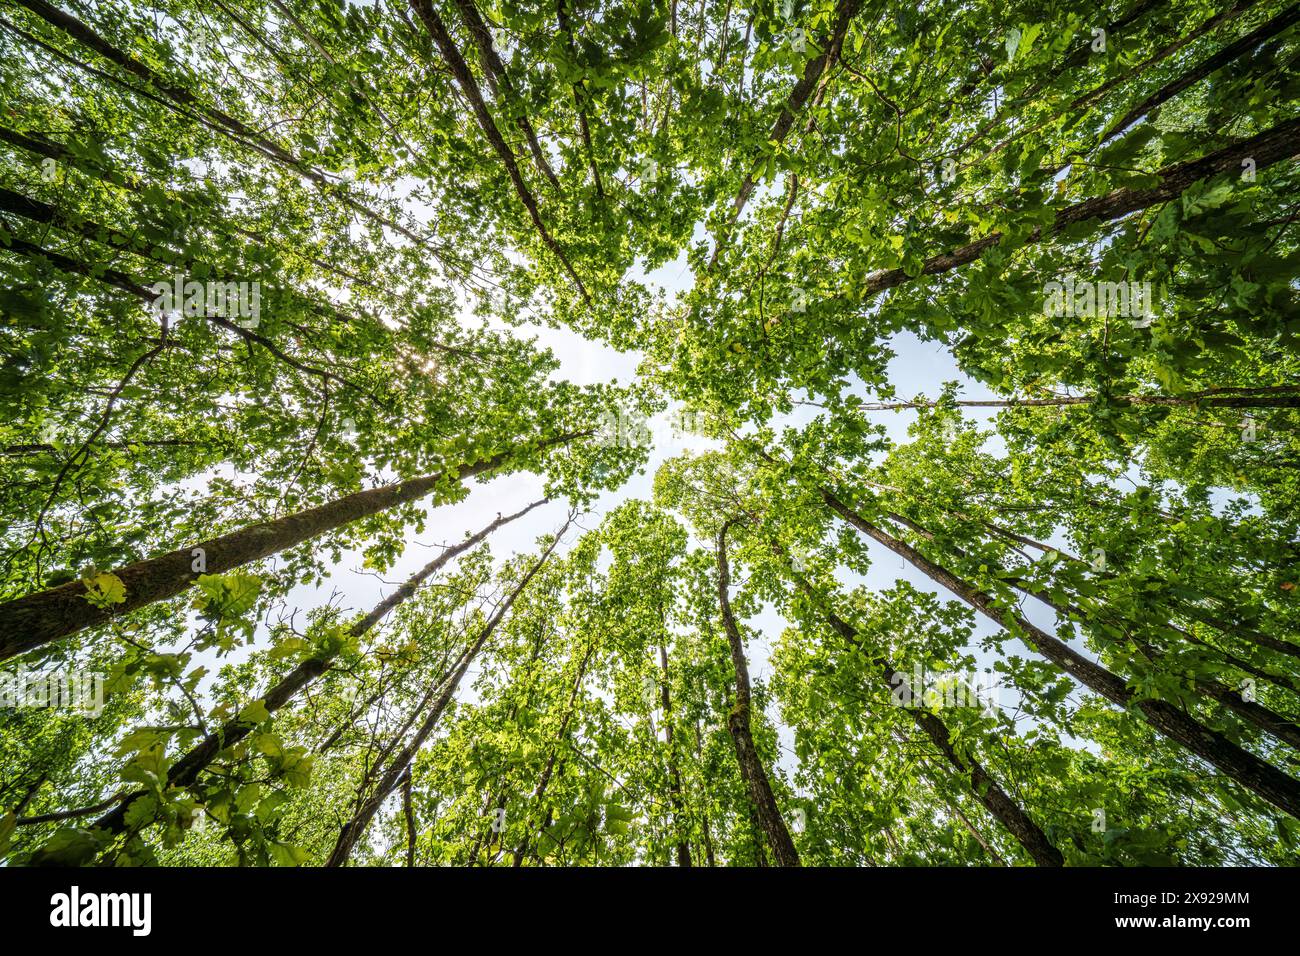 Observer un grand tronc d'arbre avec des feuilles vertes sous le ciel dans un paysage naturel. L'arbre se dresse comme une plante terrestre avec des brindilles, du bois et de l'herbe Banque D'Images